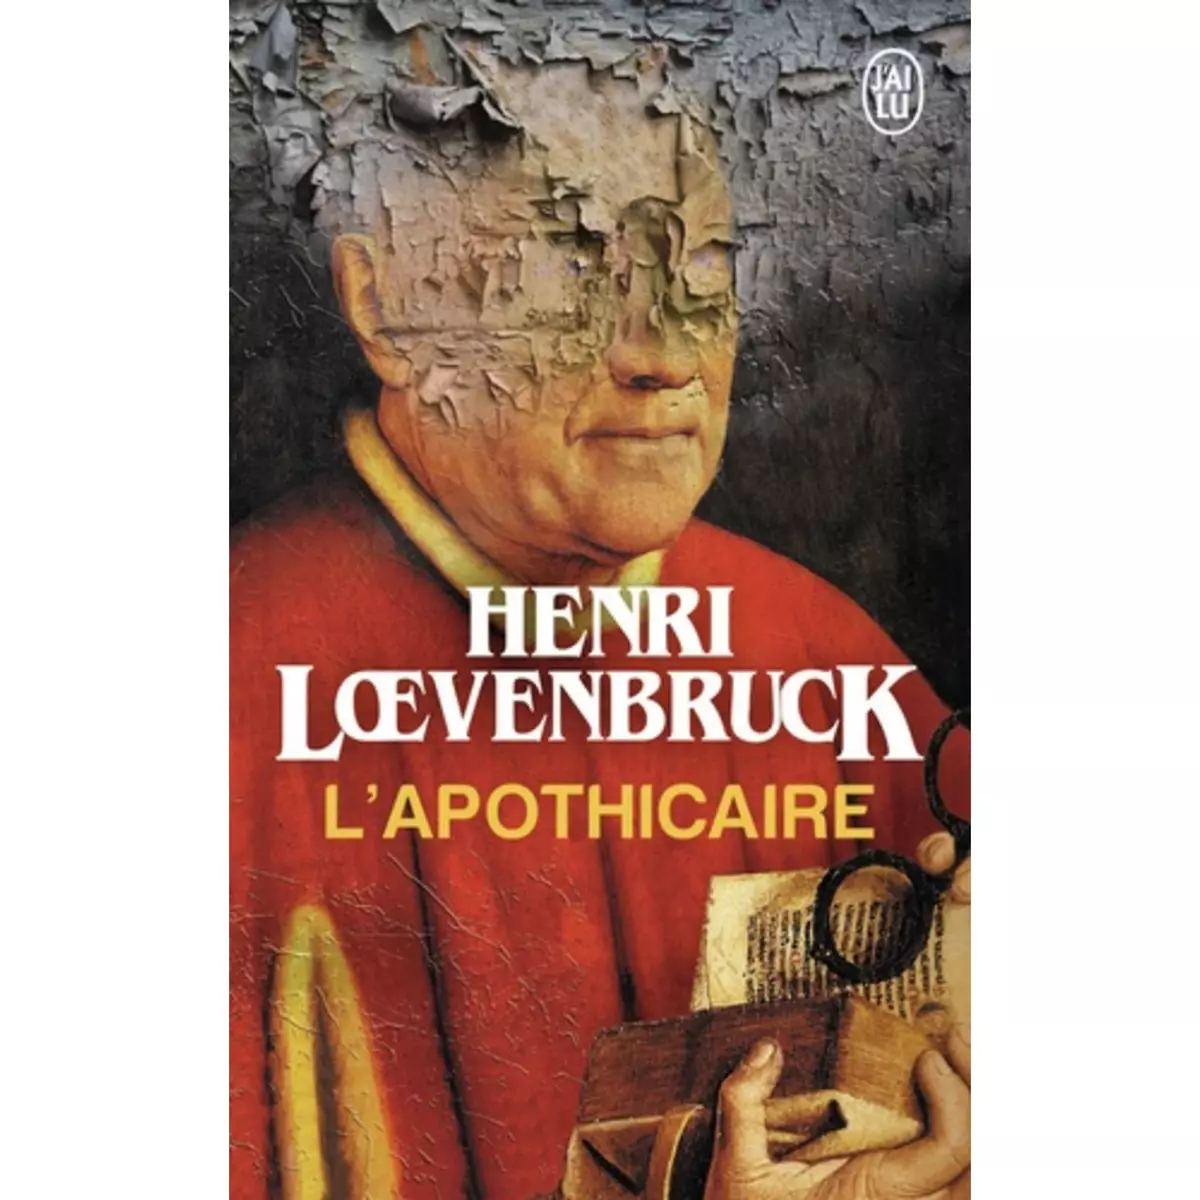  L'APOTHICAIRE, Loevenbruck Henri